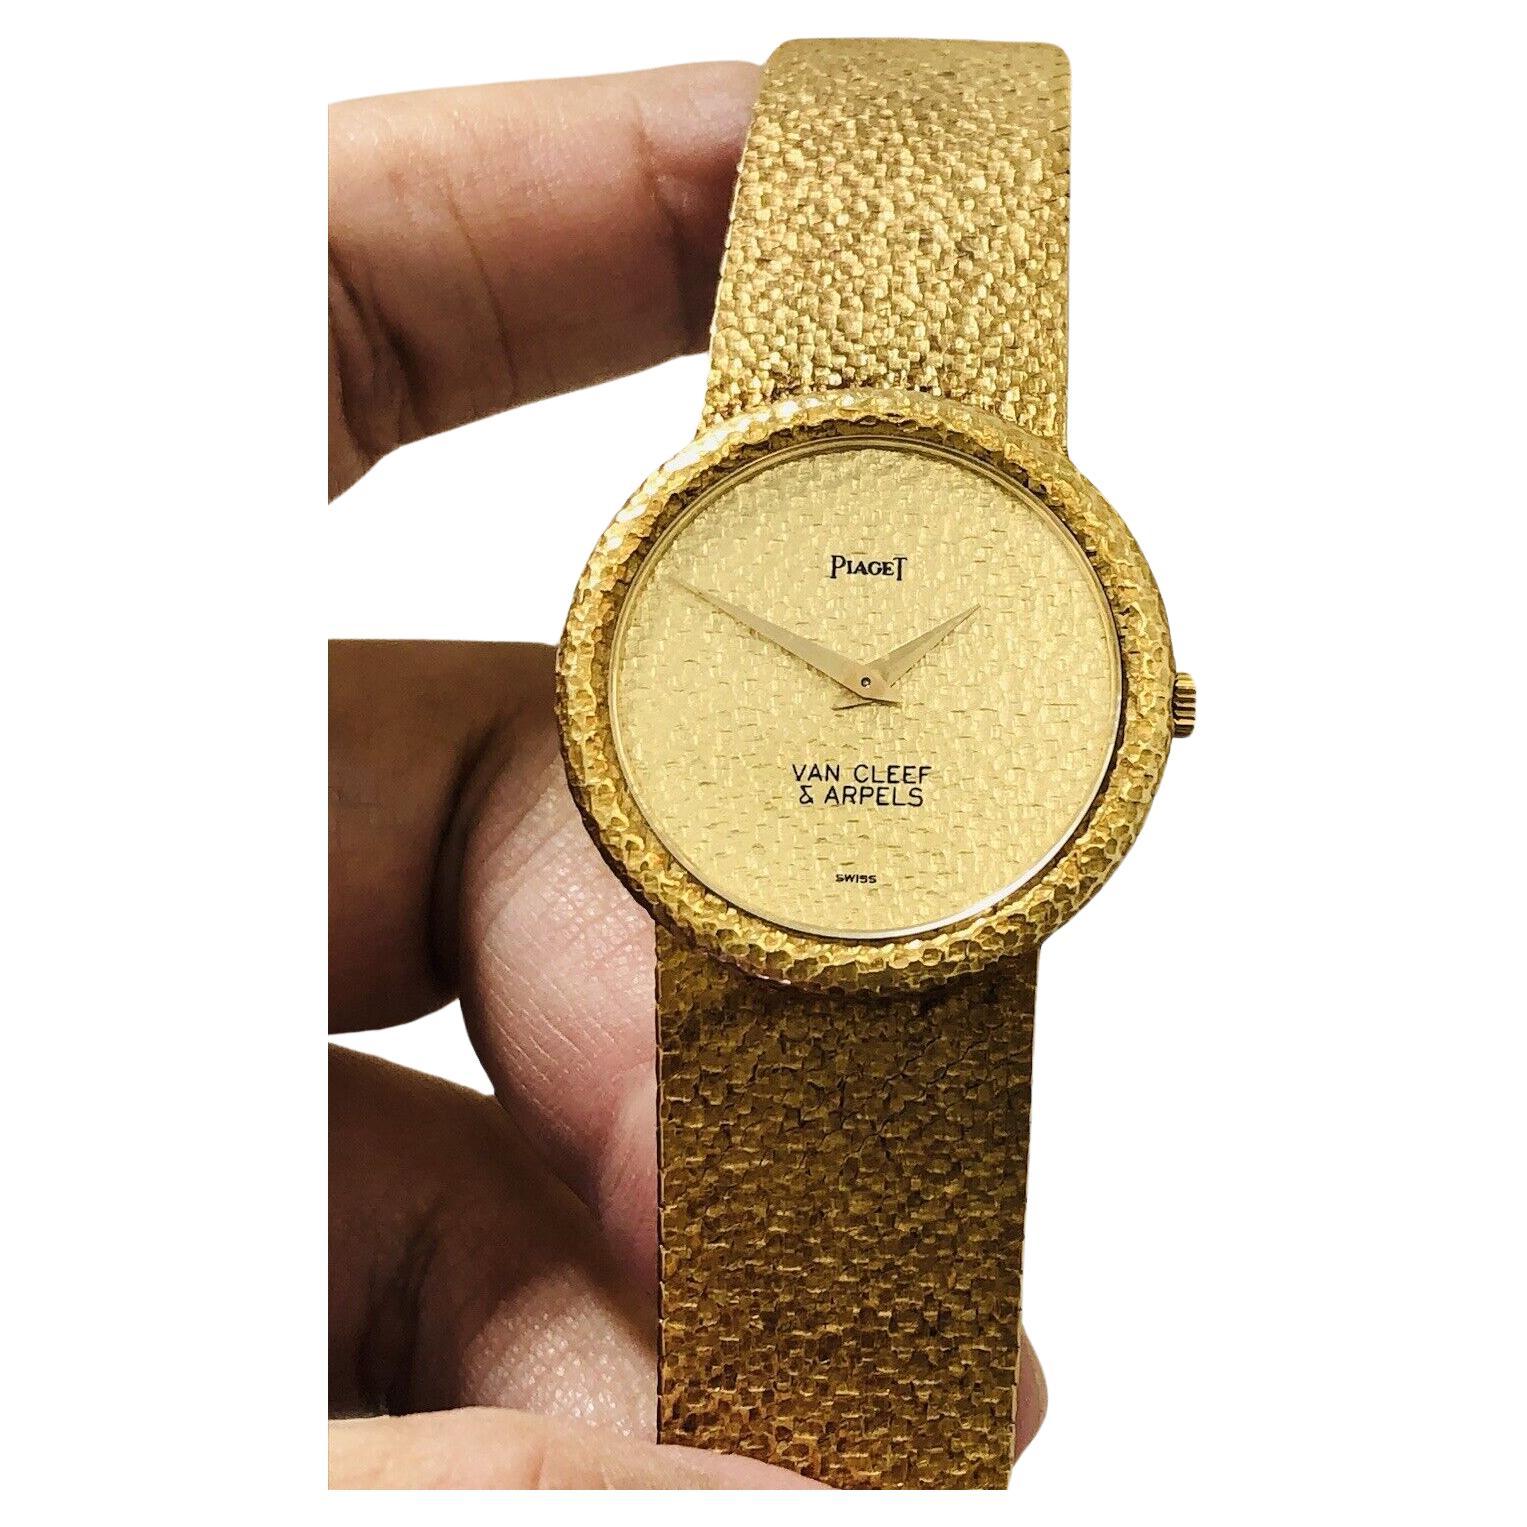 VAN CLEEF & ARPELS PIAGET 18k Gelbgold Uhr Circa 1970er Herren Größe